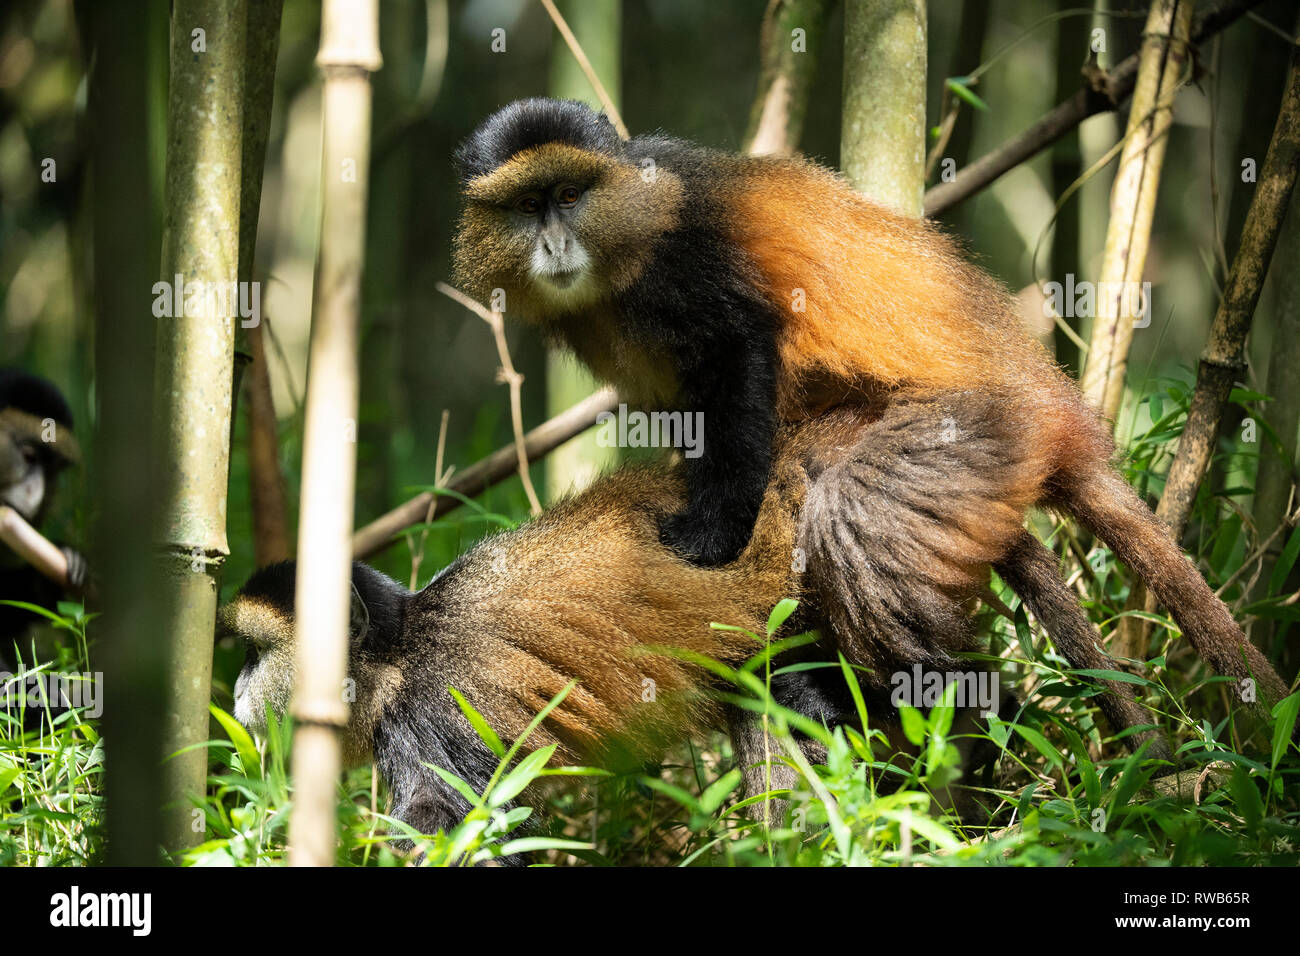 Golden monkeys mating in bamboo forest, Cercopithecus kandti, Mgahinga Gorilla National Park, Uganda Stock Photo